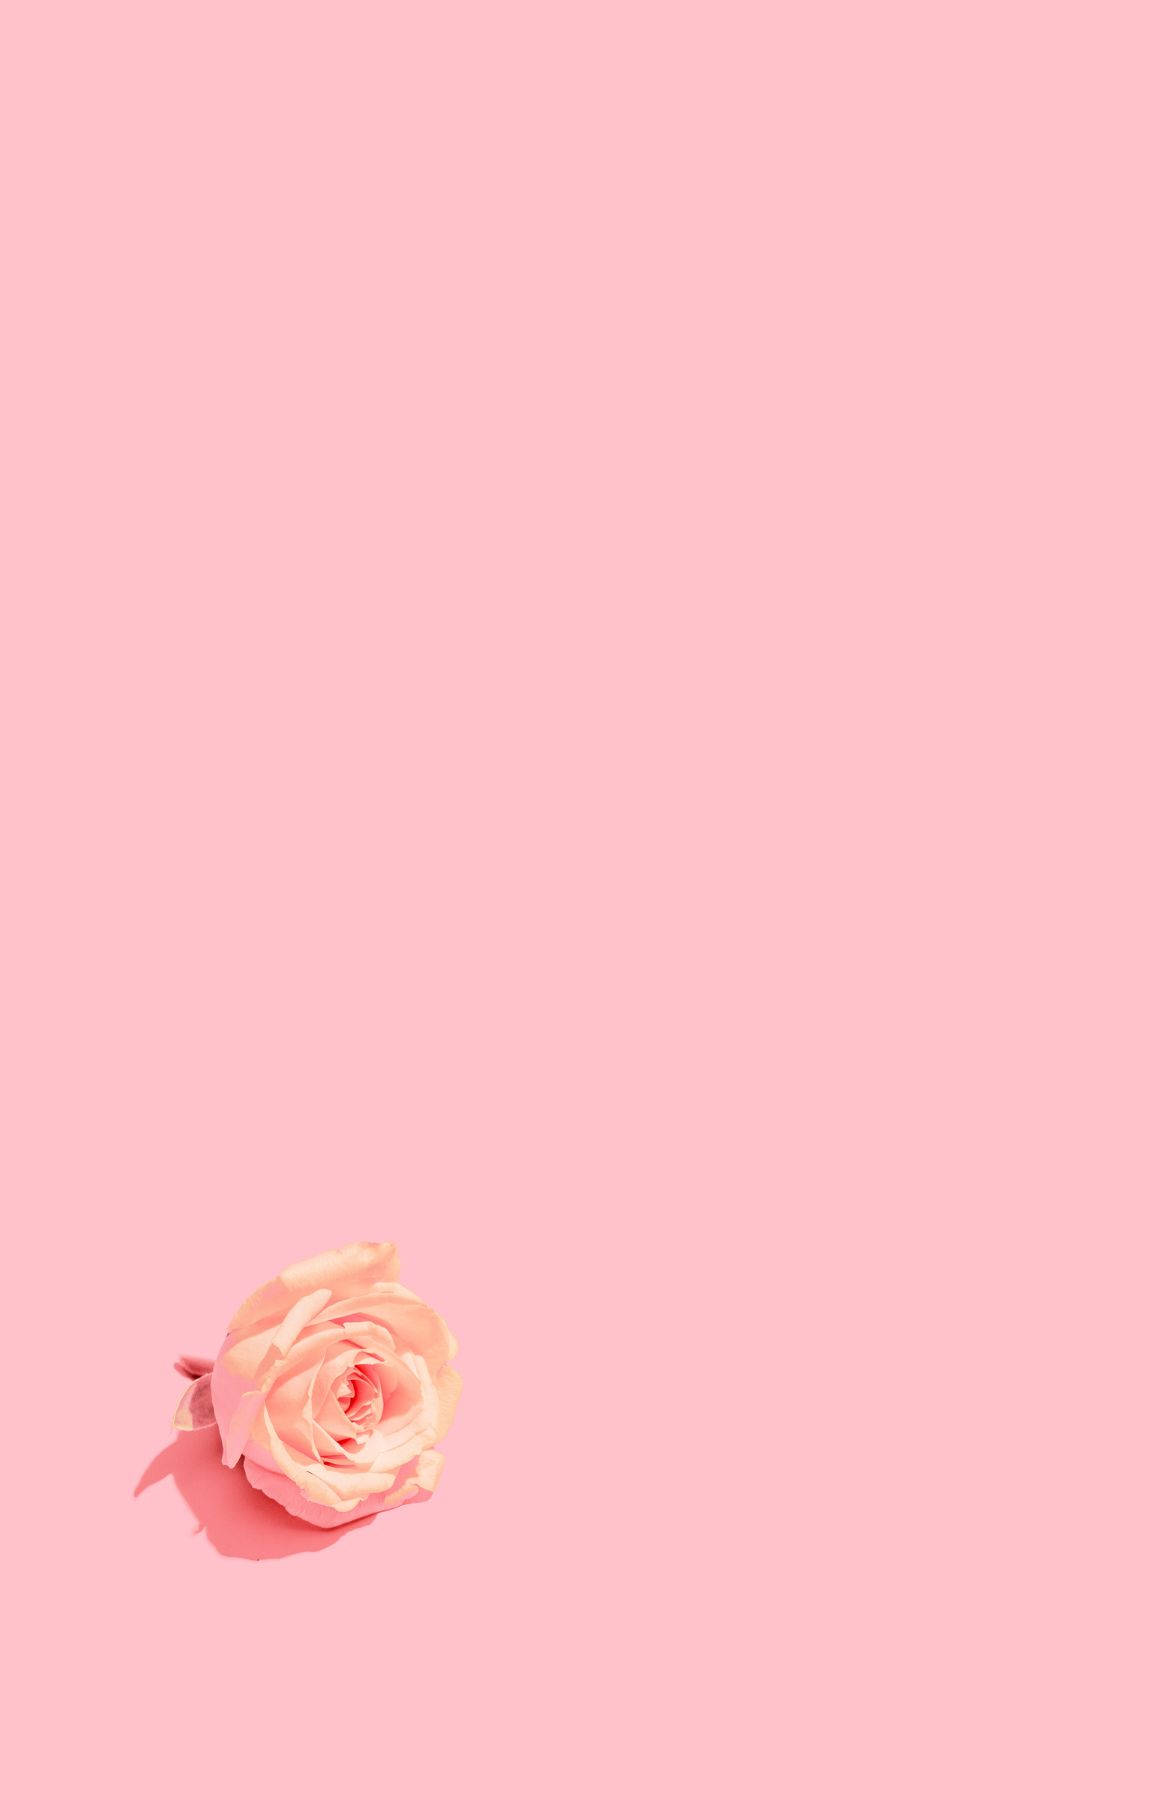 Minimalist Baby Pink Rose Flower Background